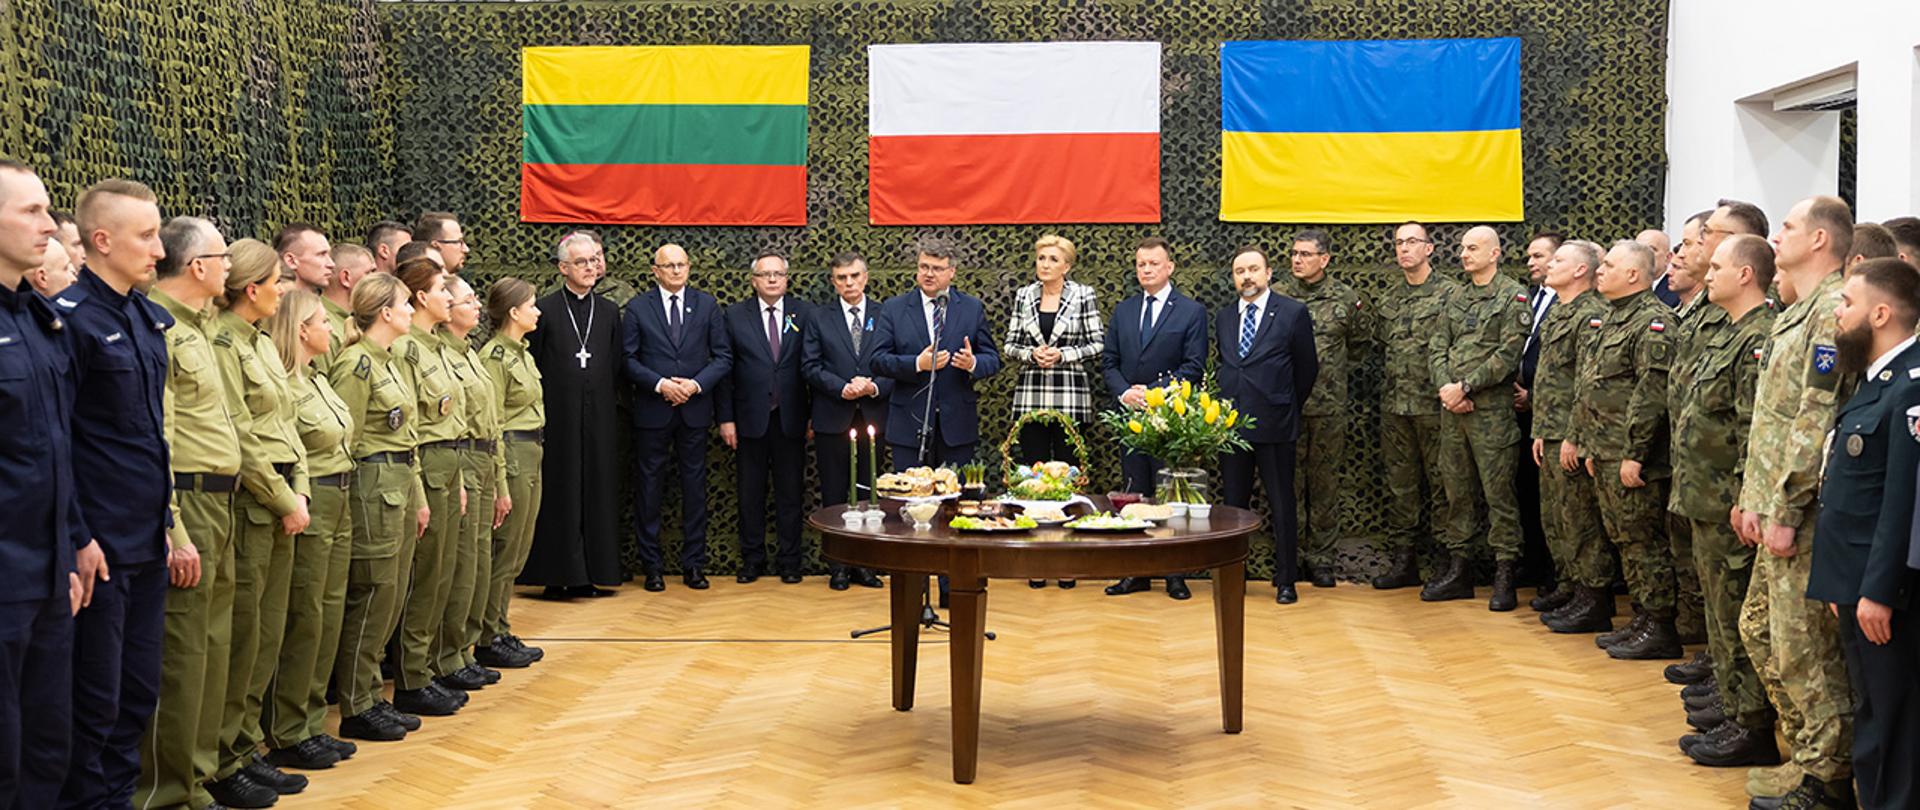 Na zdjęciu widać uczestników spotkania i przemawiającego wiceministra Macieja Wąsika.